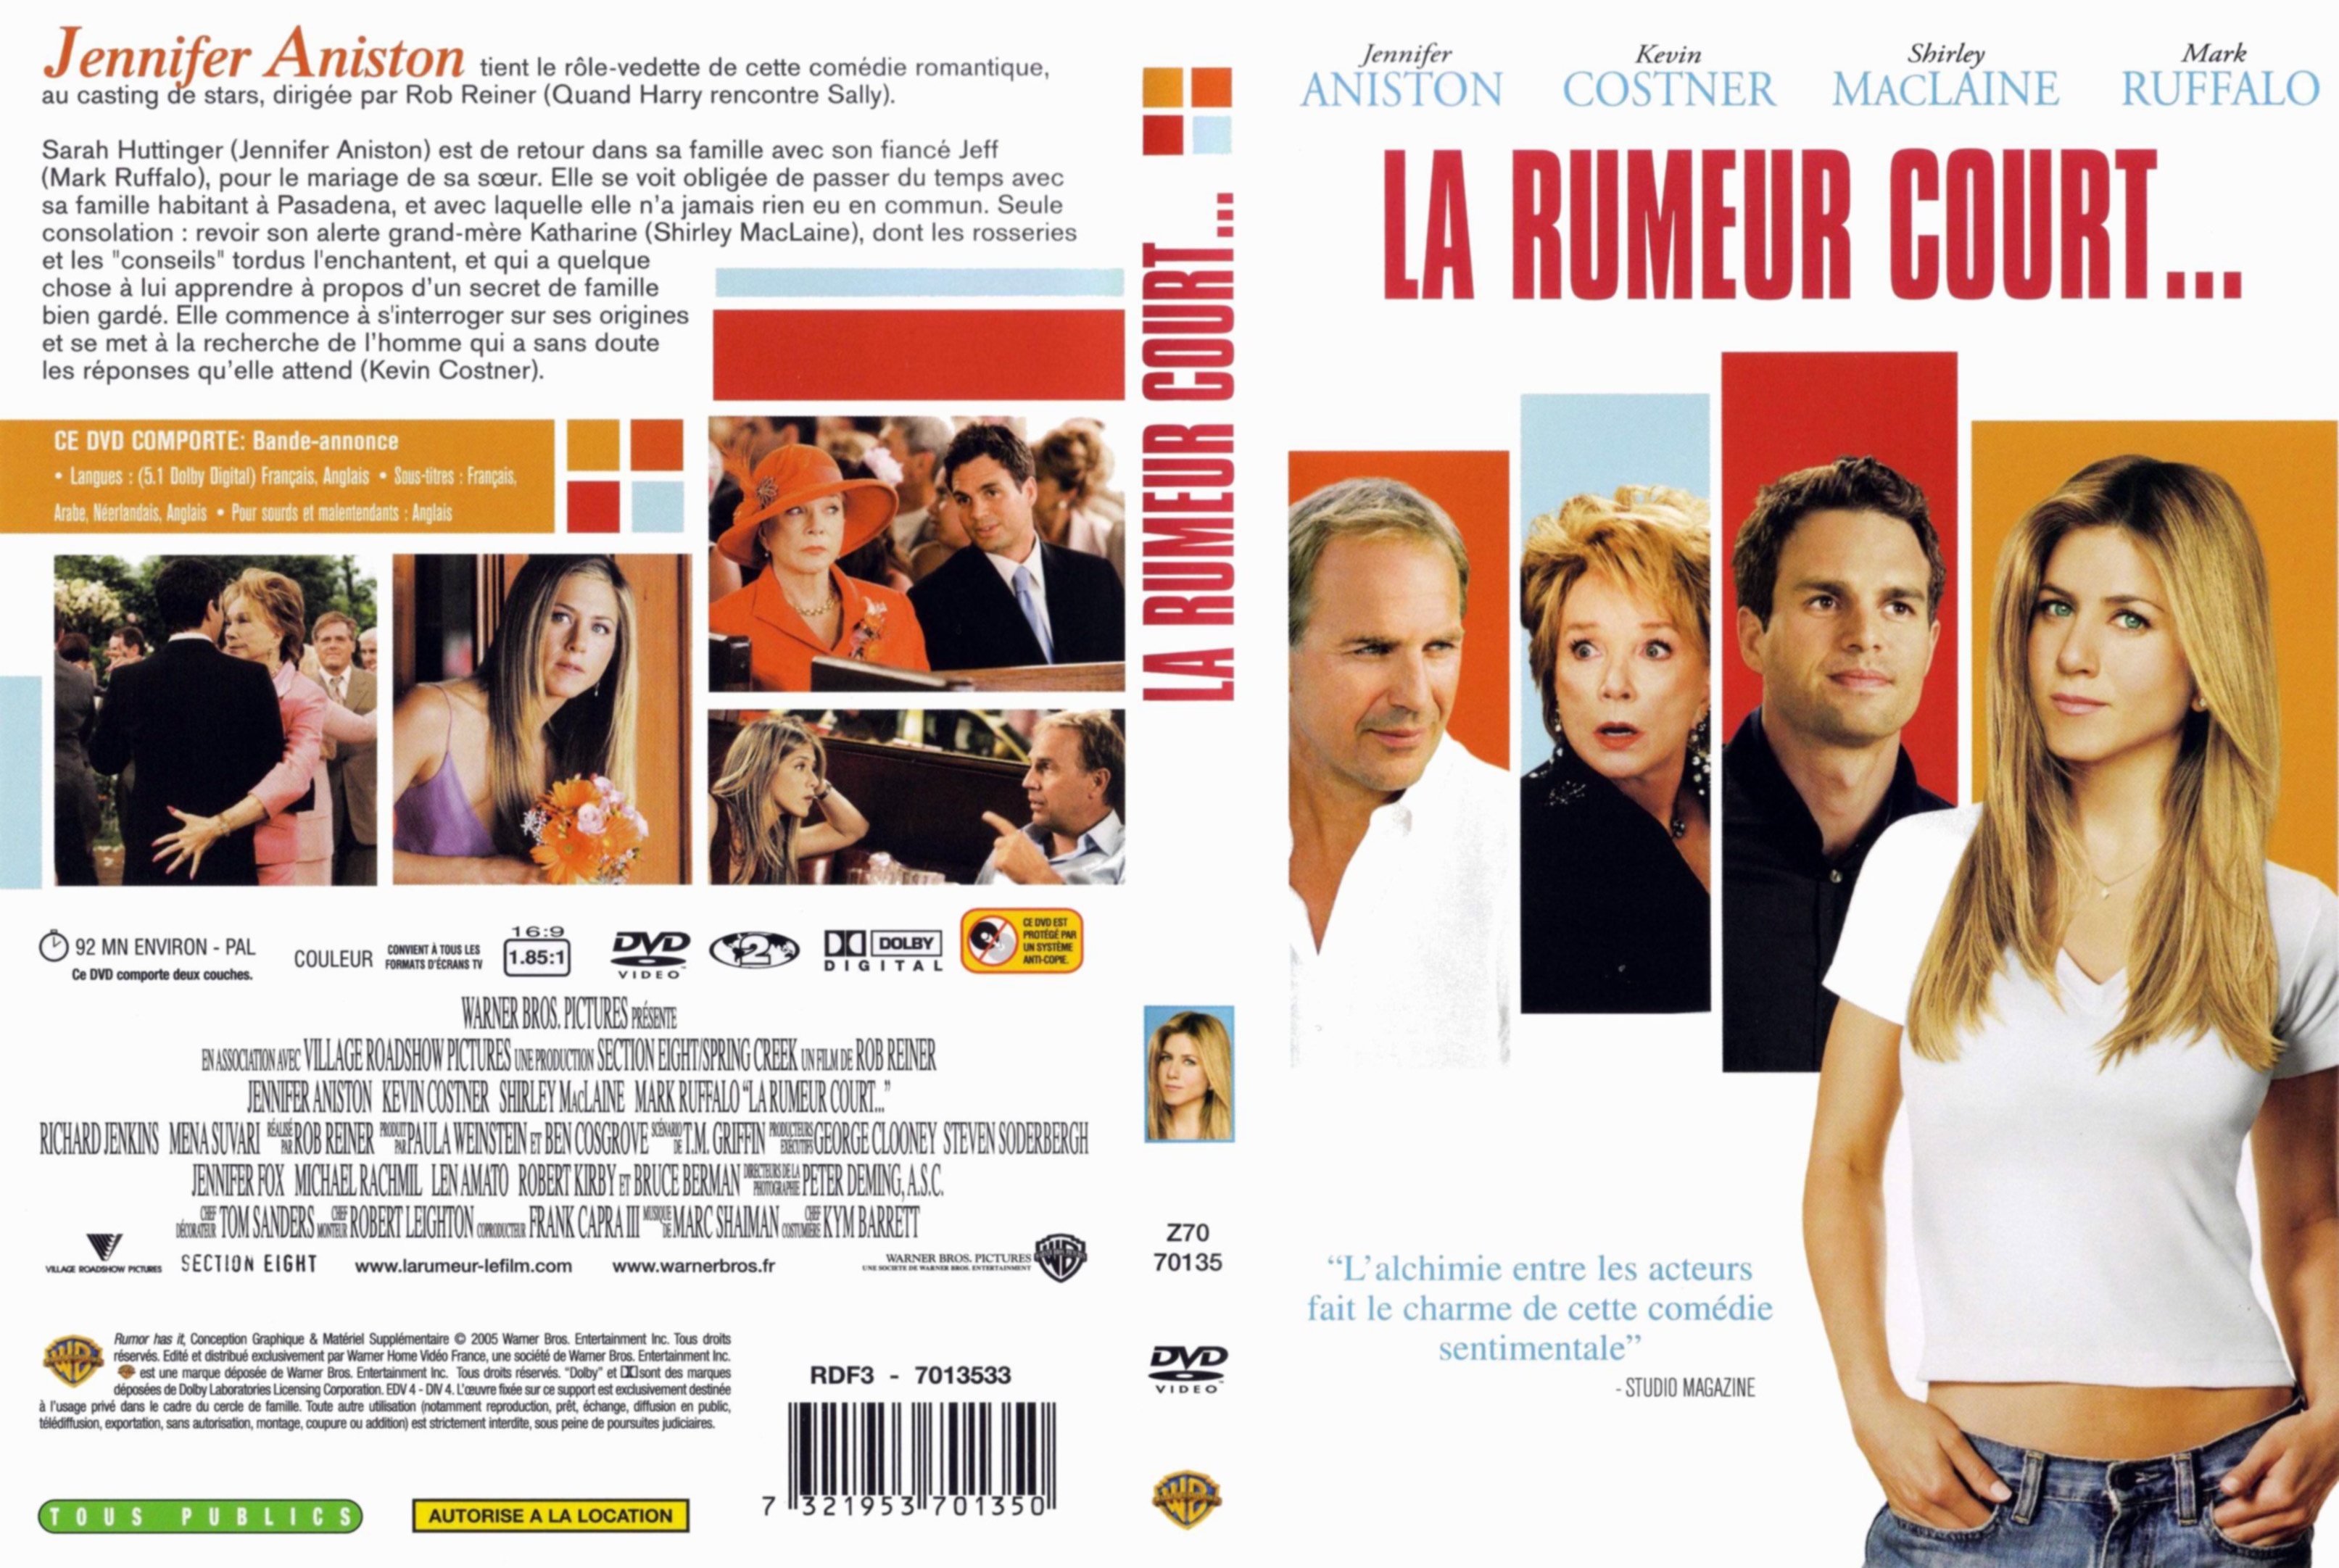 Jaquette DVD La rumeur court